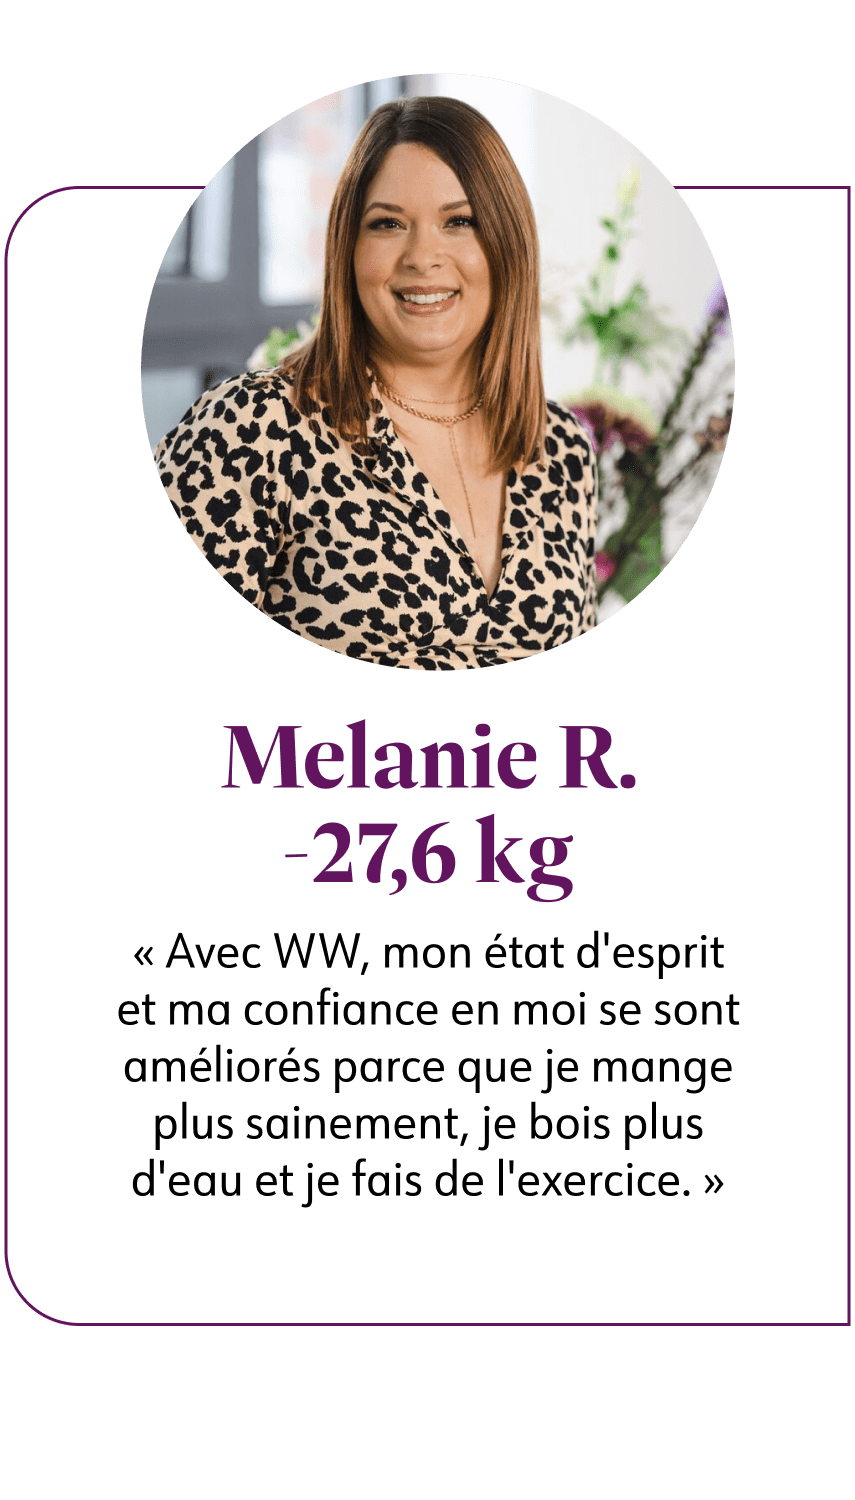 Melanie R. -27,6 kg  Avec WW, mon état d'esprit et ma confiance en moi se sont améliorés parce que je mange plus sainement, je bois plus d'eau et je fais de l'exercice.